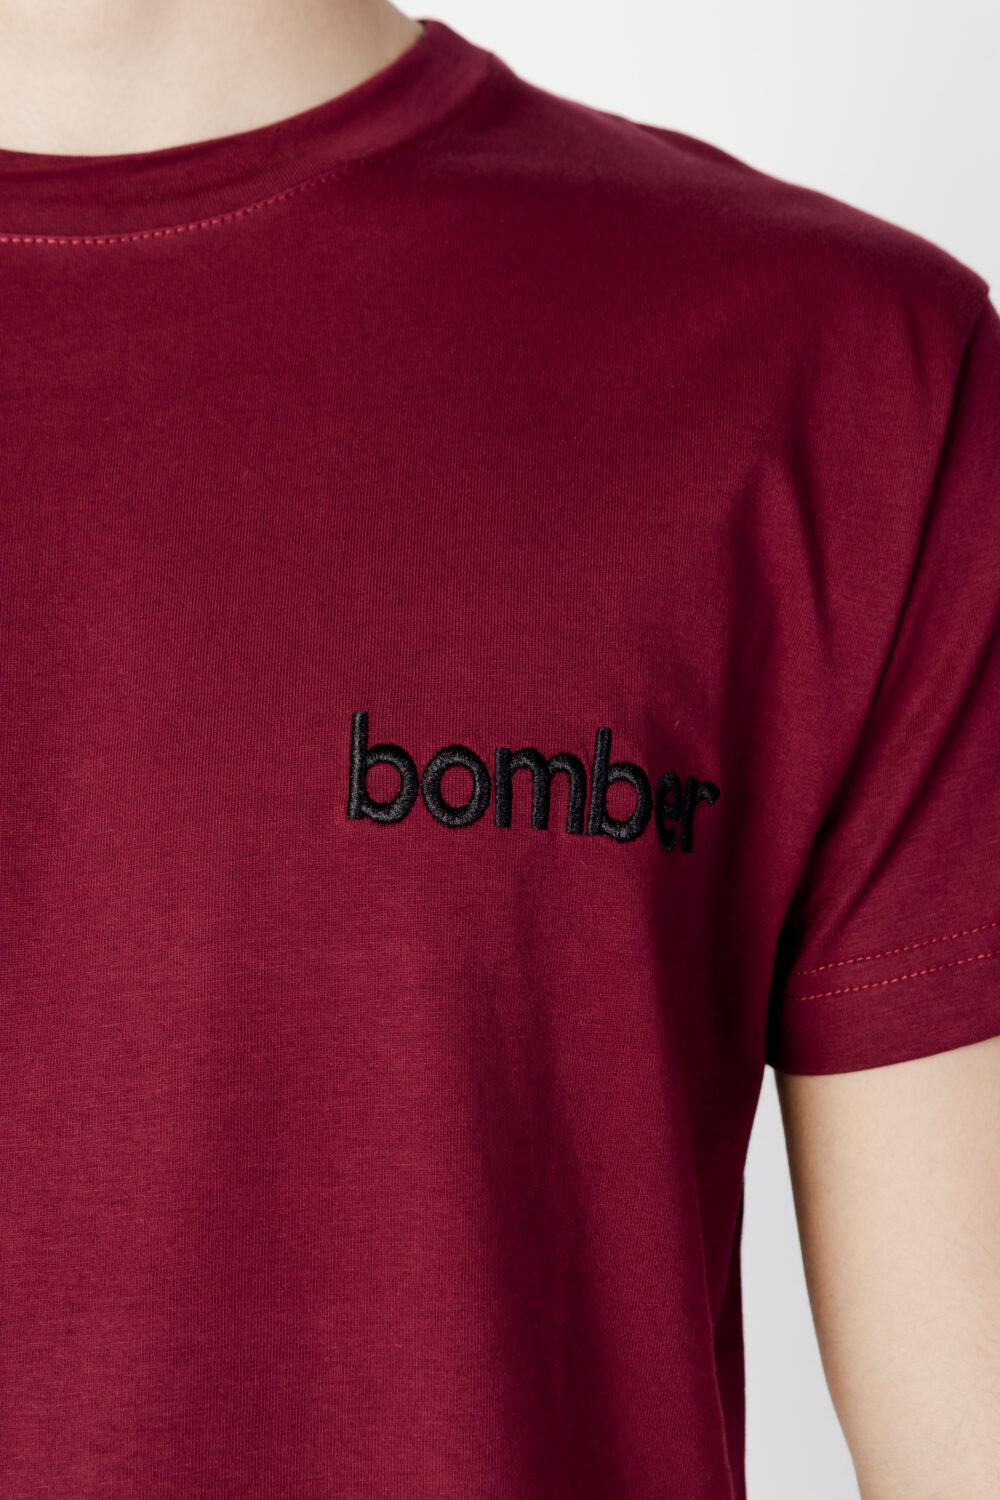 T-shirt The Bomber LOGO Bordeaux - Foto 5